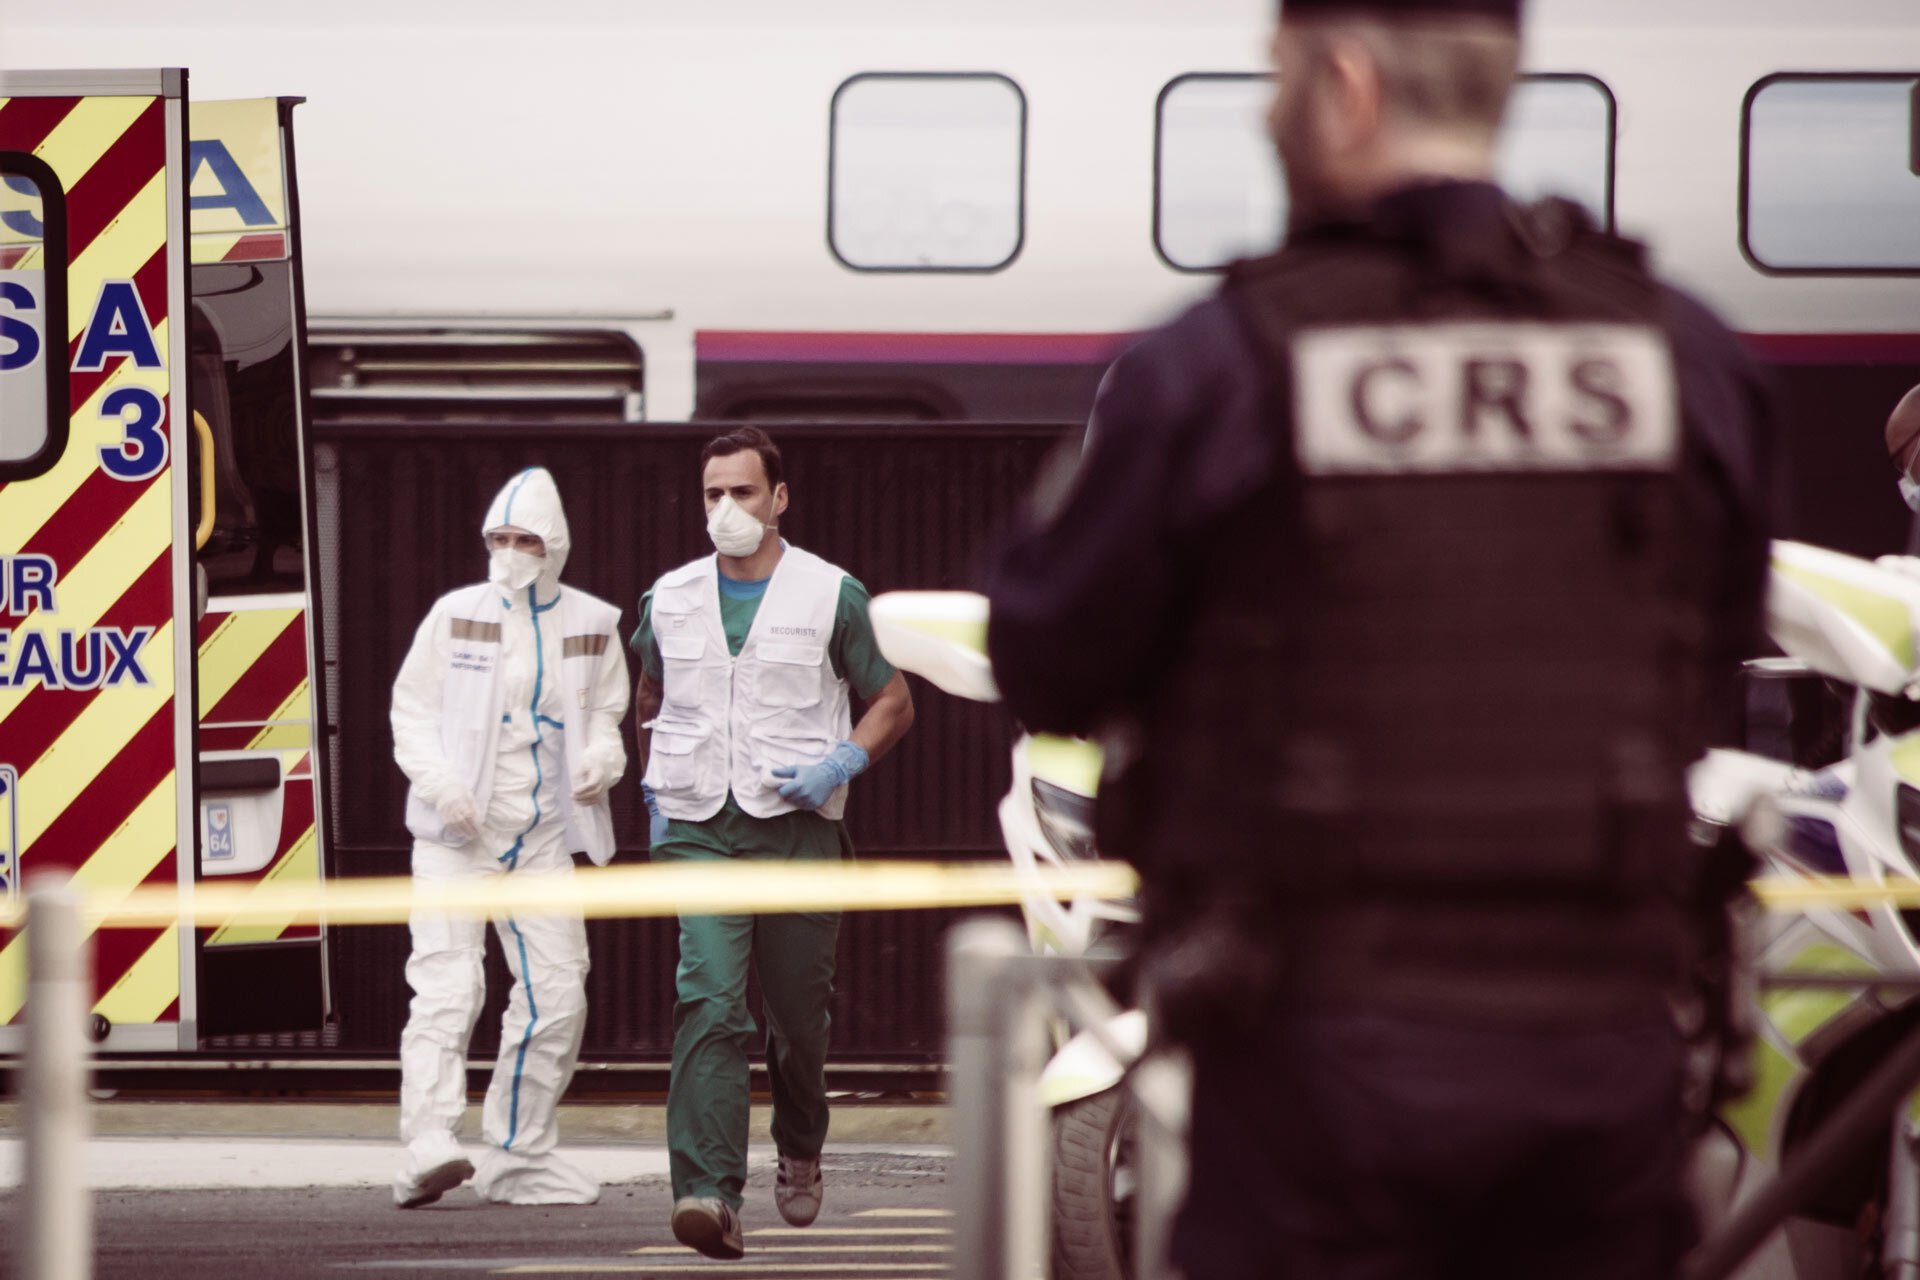 Des infirmiers et un CRS récupèrent un patient médicalisé dans un train, pour le mettre dans l'ambulance.